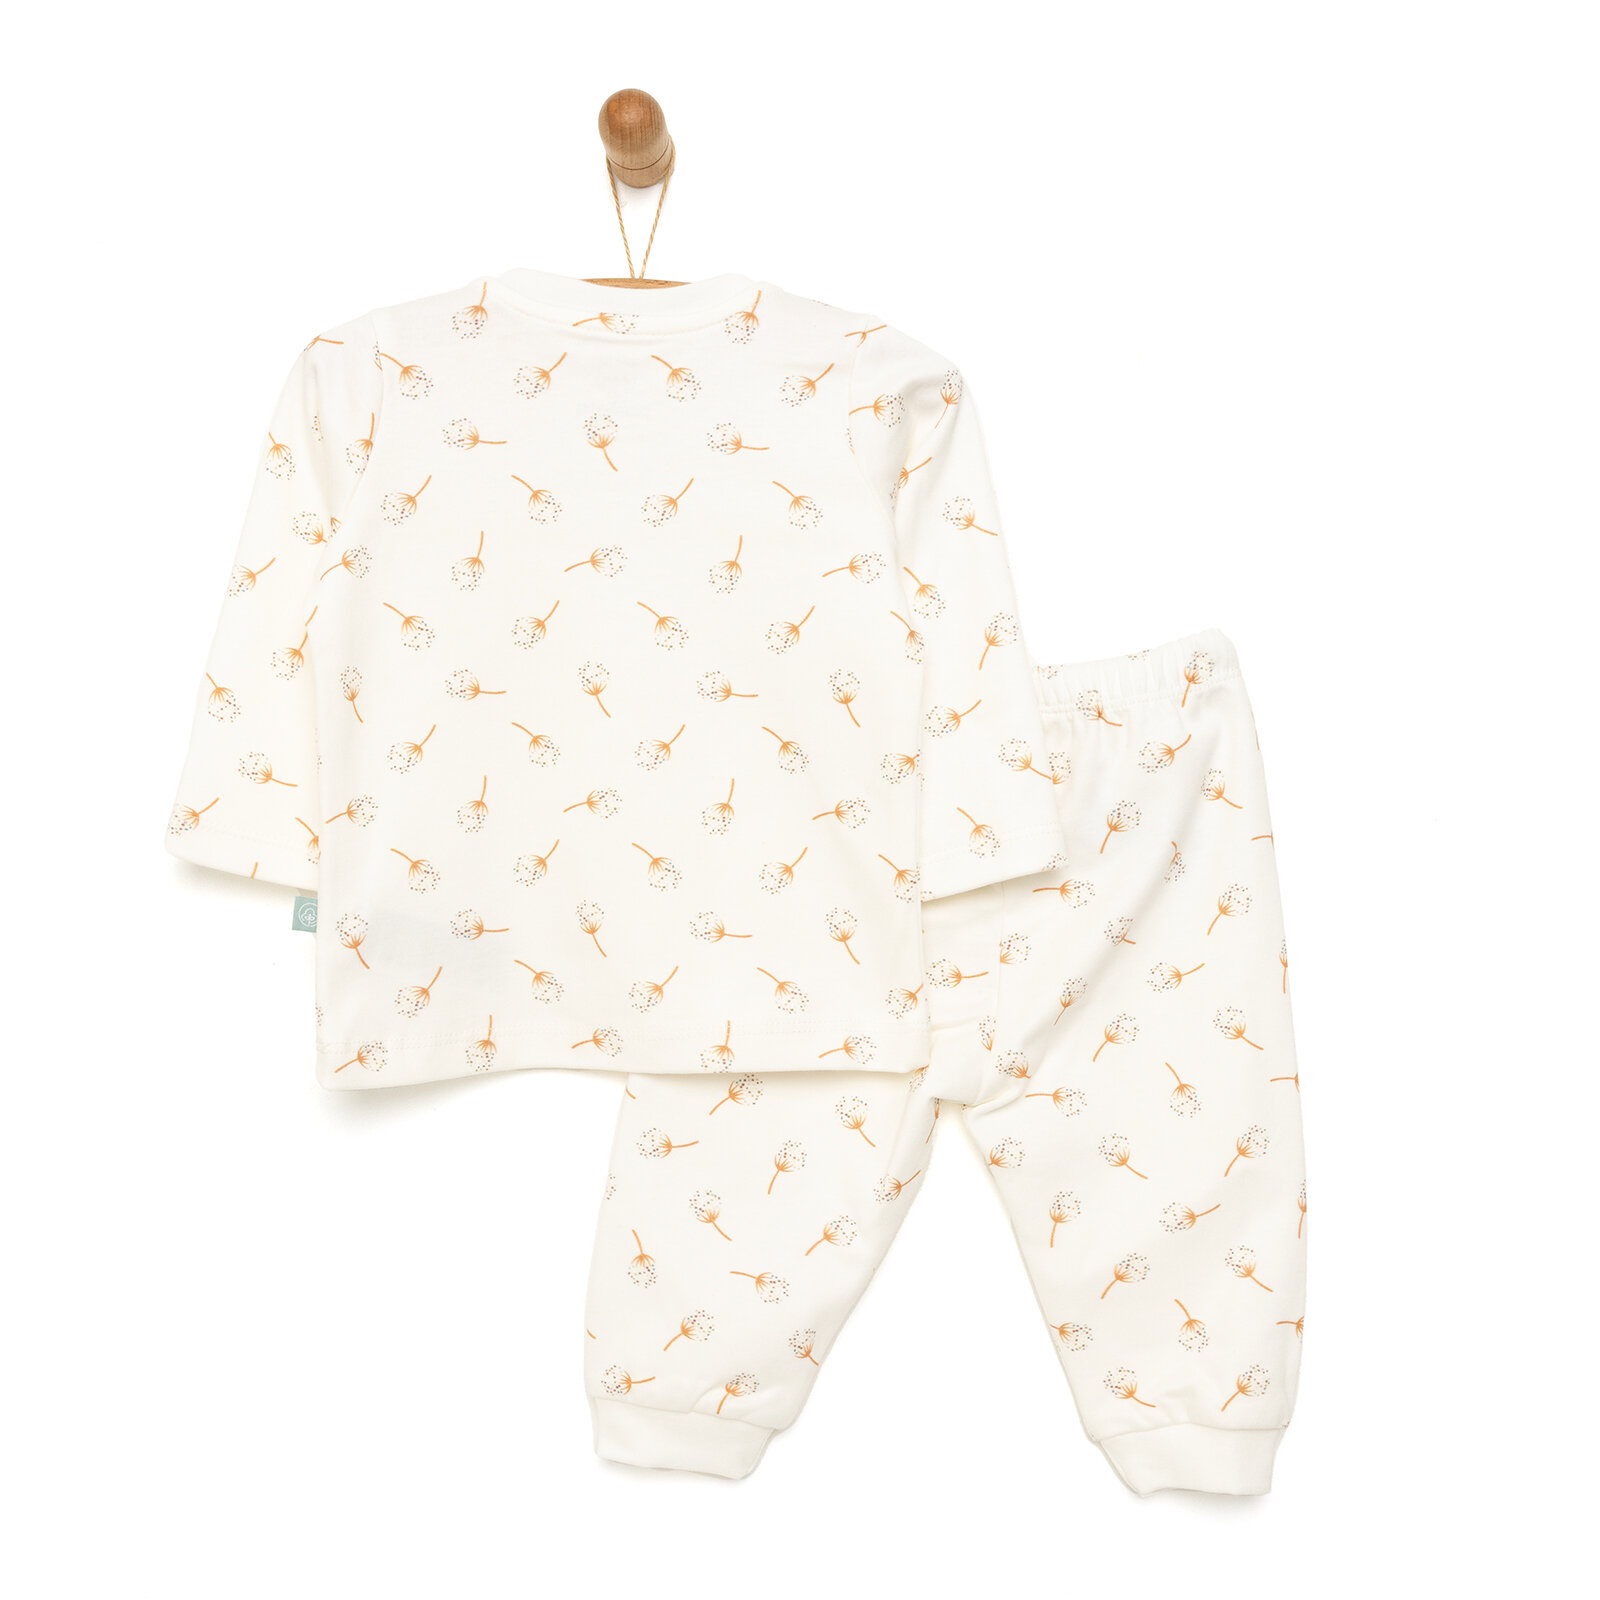 Organik Pijama Takımı Kız Bebek